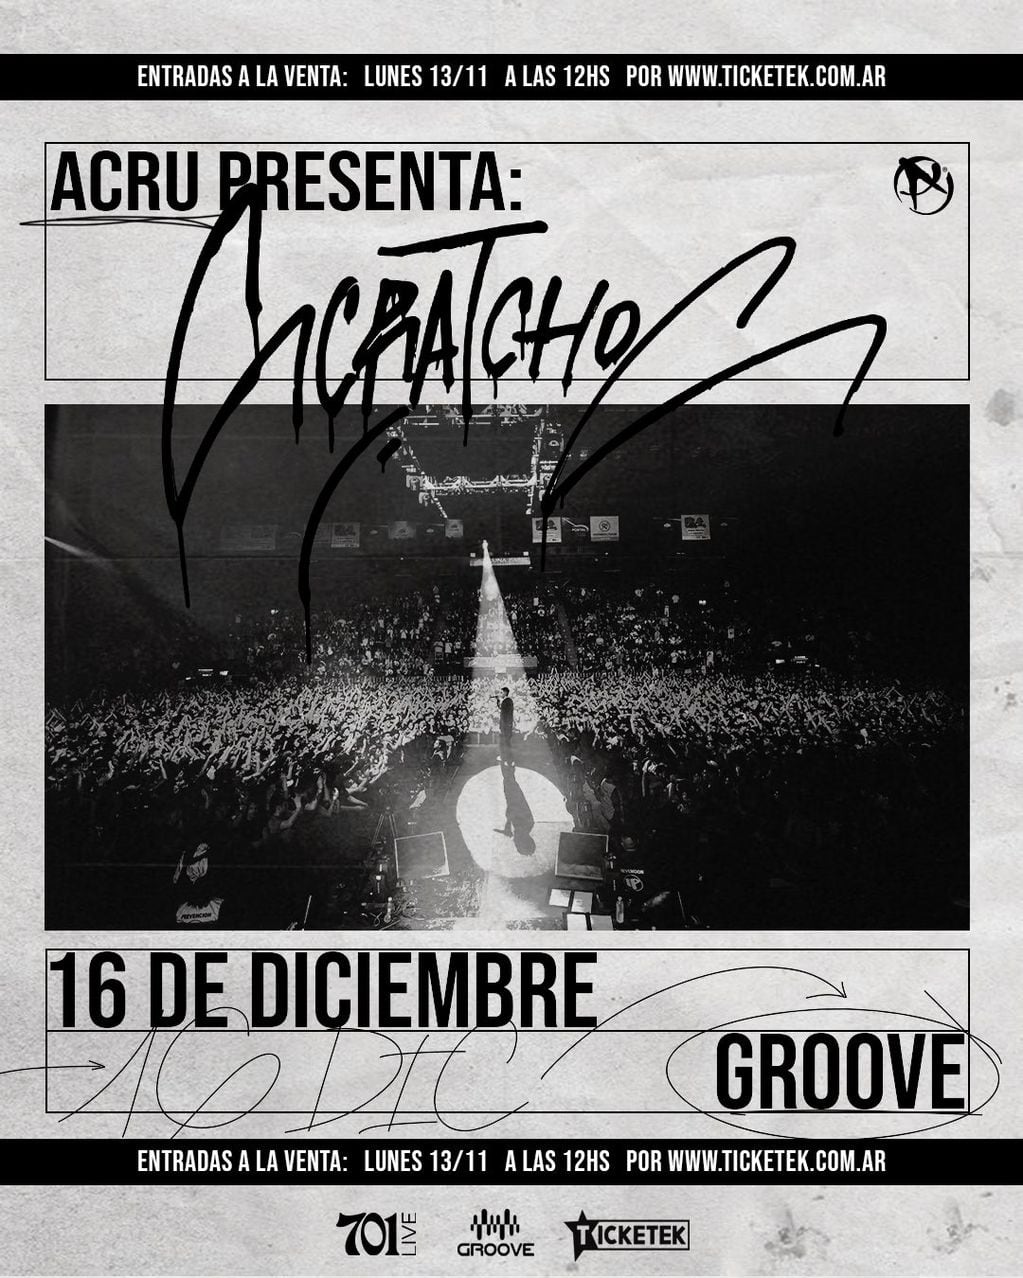 Acru presenta Scratchos en Groove, un show íntimo para cerrar el año: cuándo será y precios de entradas